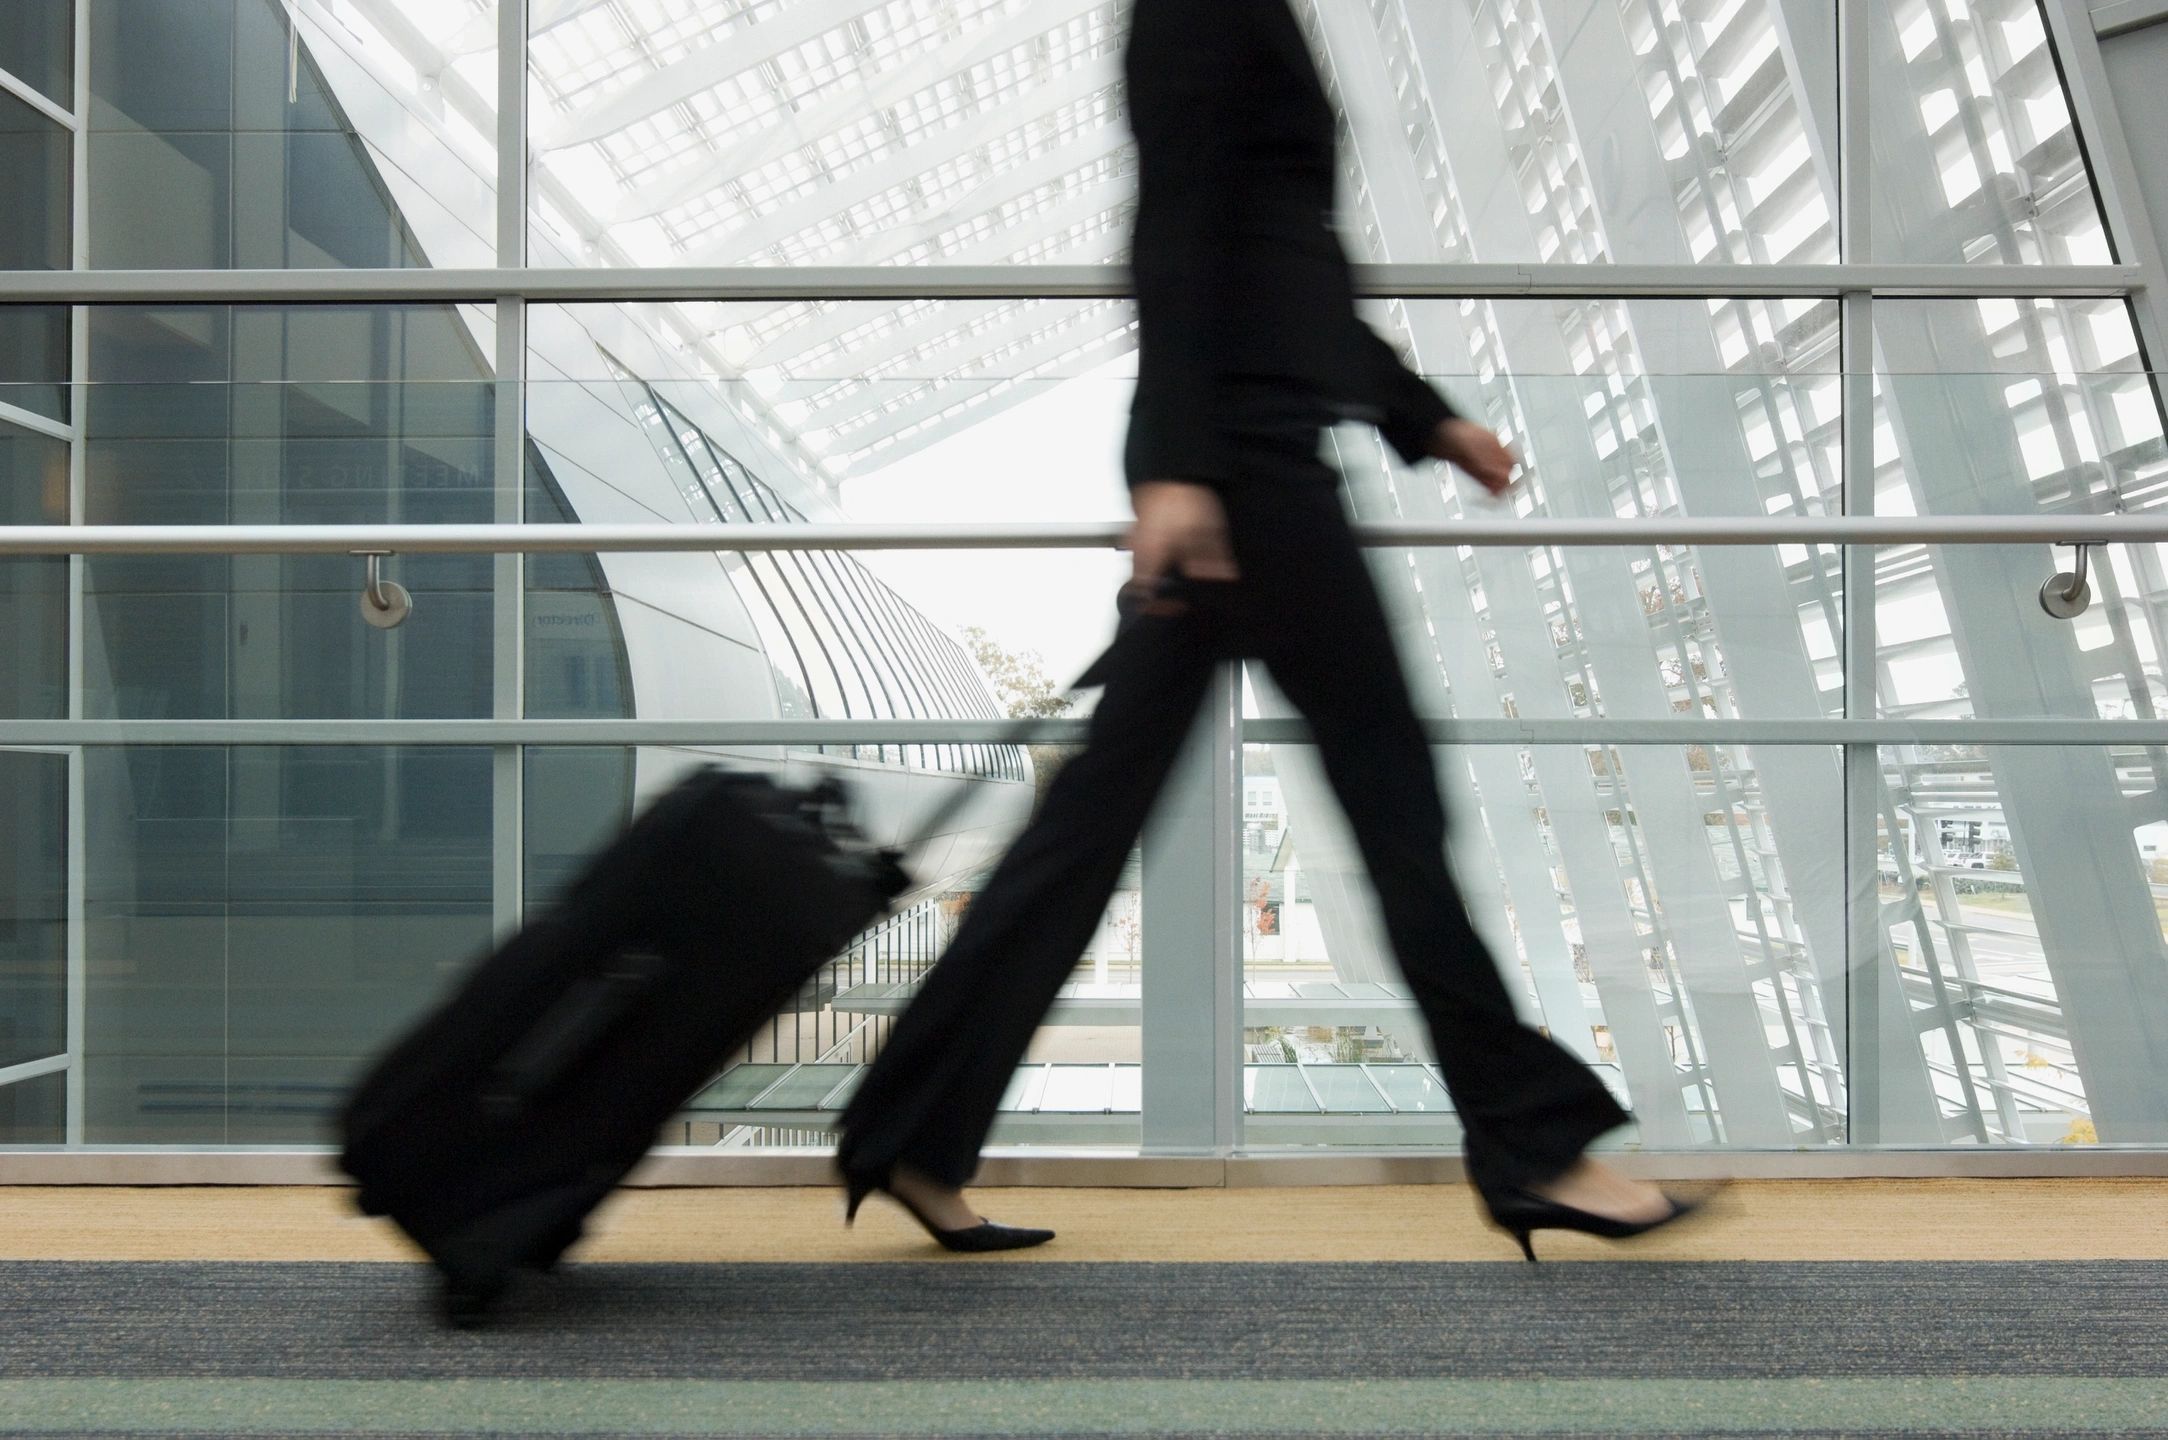 woman walking through airport